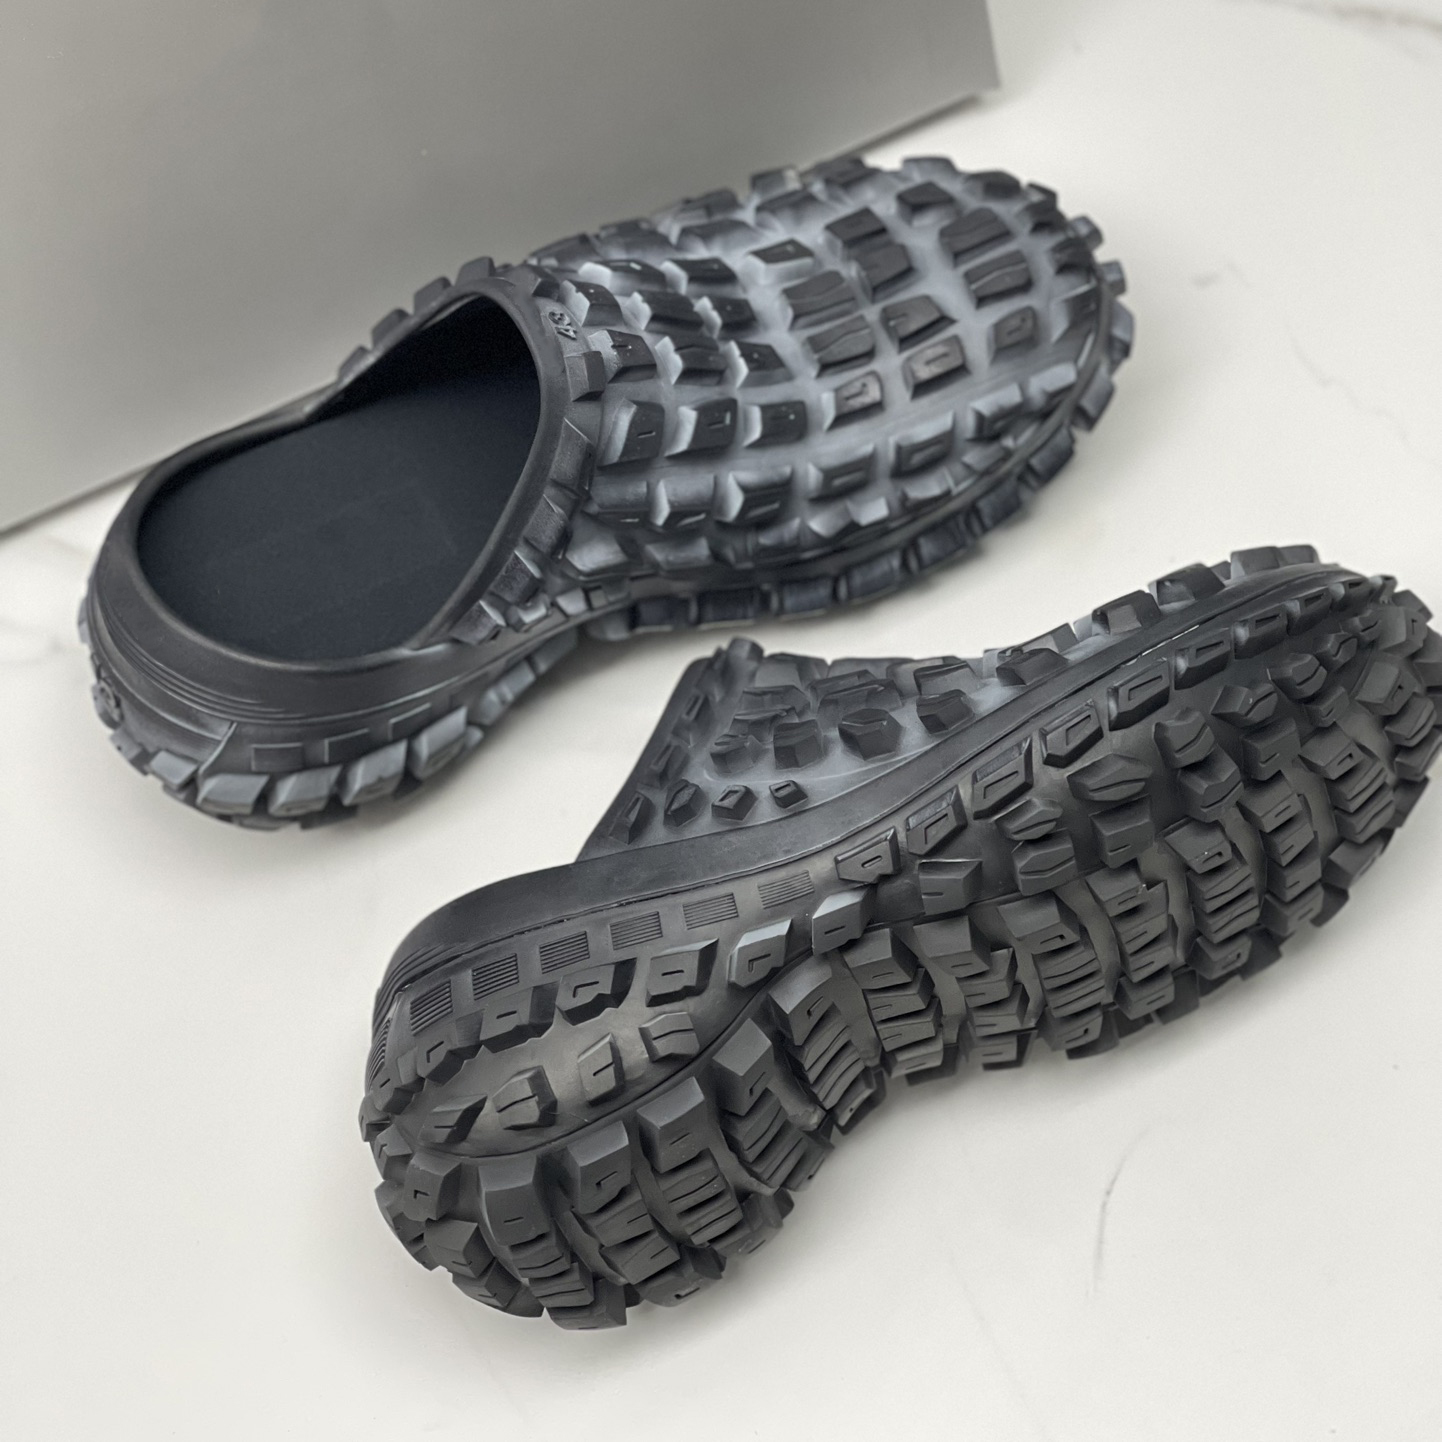 Tasarımcı Erkekler Siyah Lastik Terlik Sandalet Platformu Defender Ayakkabı Yumru Dokusu Anti-Slip Moda Yaz Terlikleri 39-45 Boyut Erkek Sandal